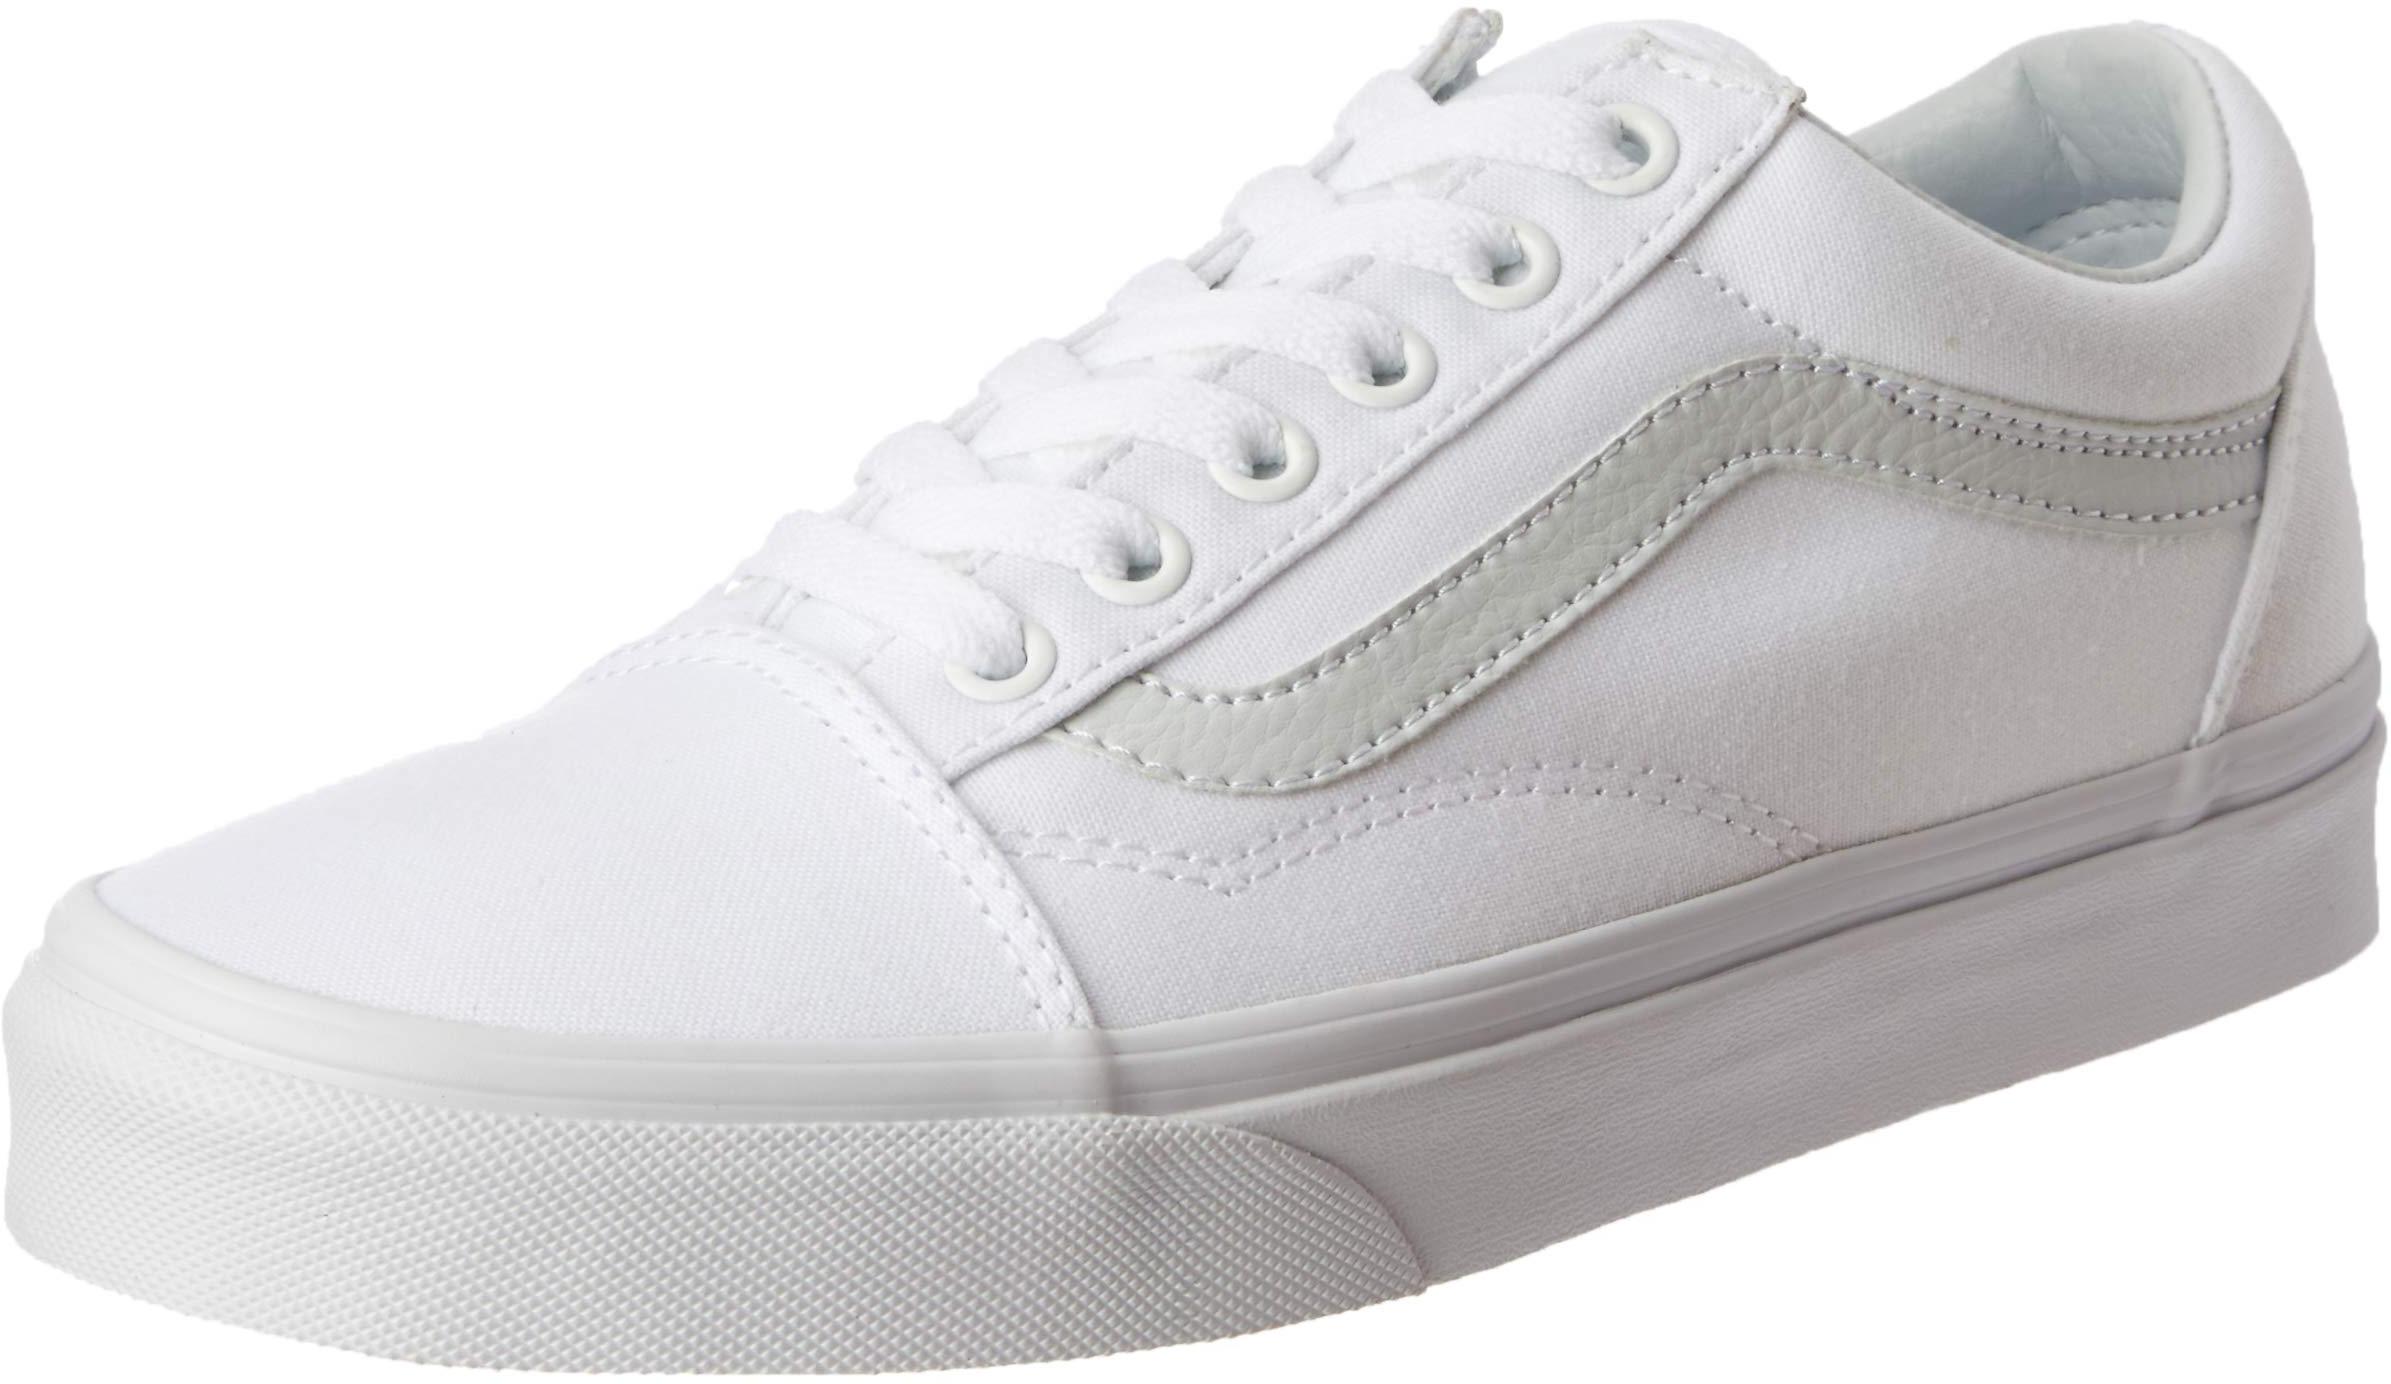 Vans Unisex Old Skool Classic Skate Shoes - True White - 5